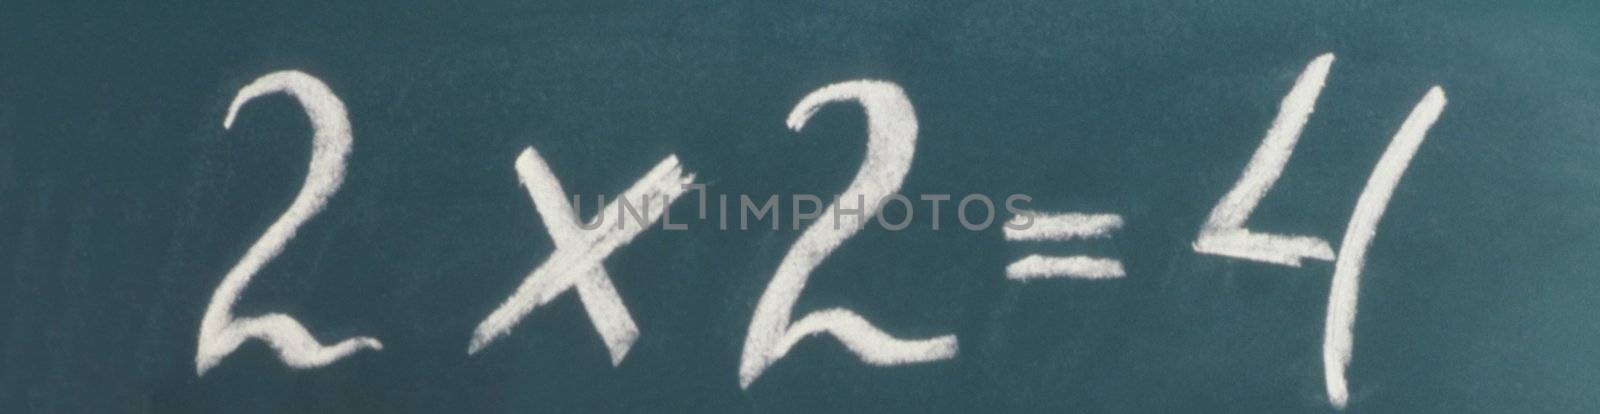 A chalkboard on white with "2 * 2=4" written on it. by ozaiachin